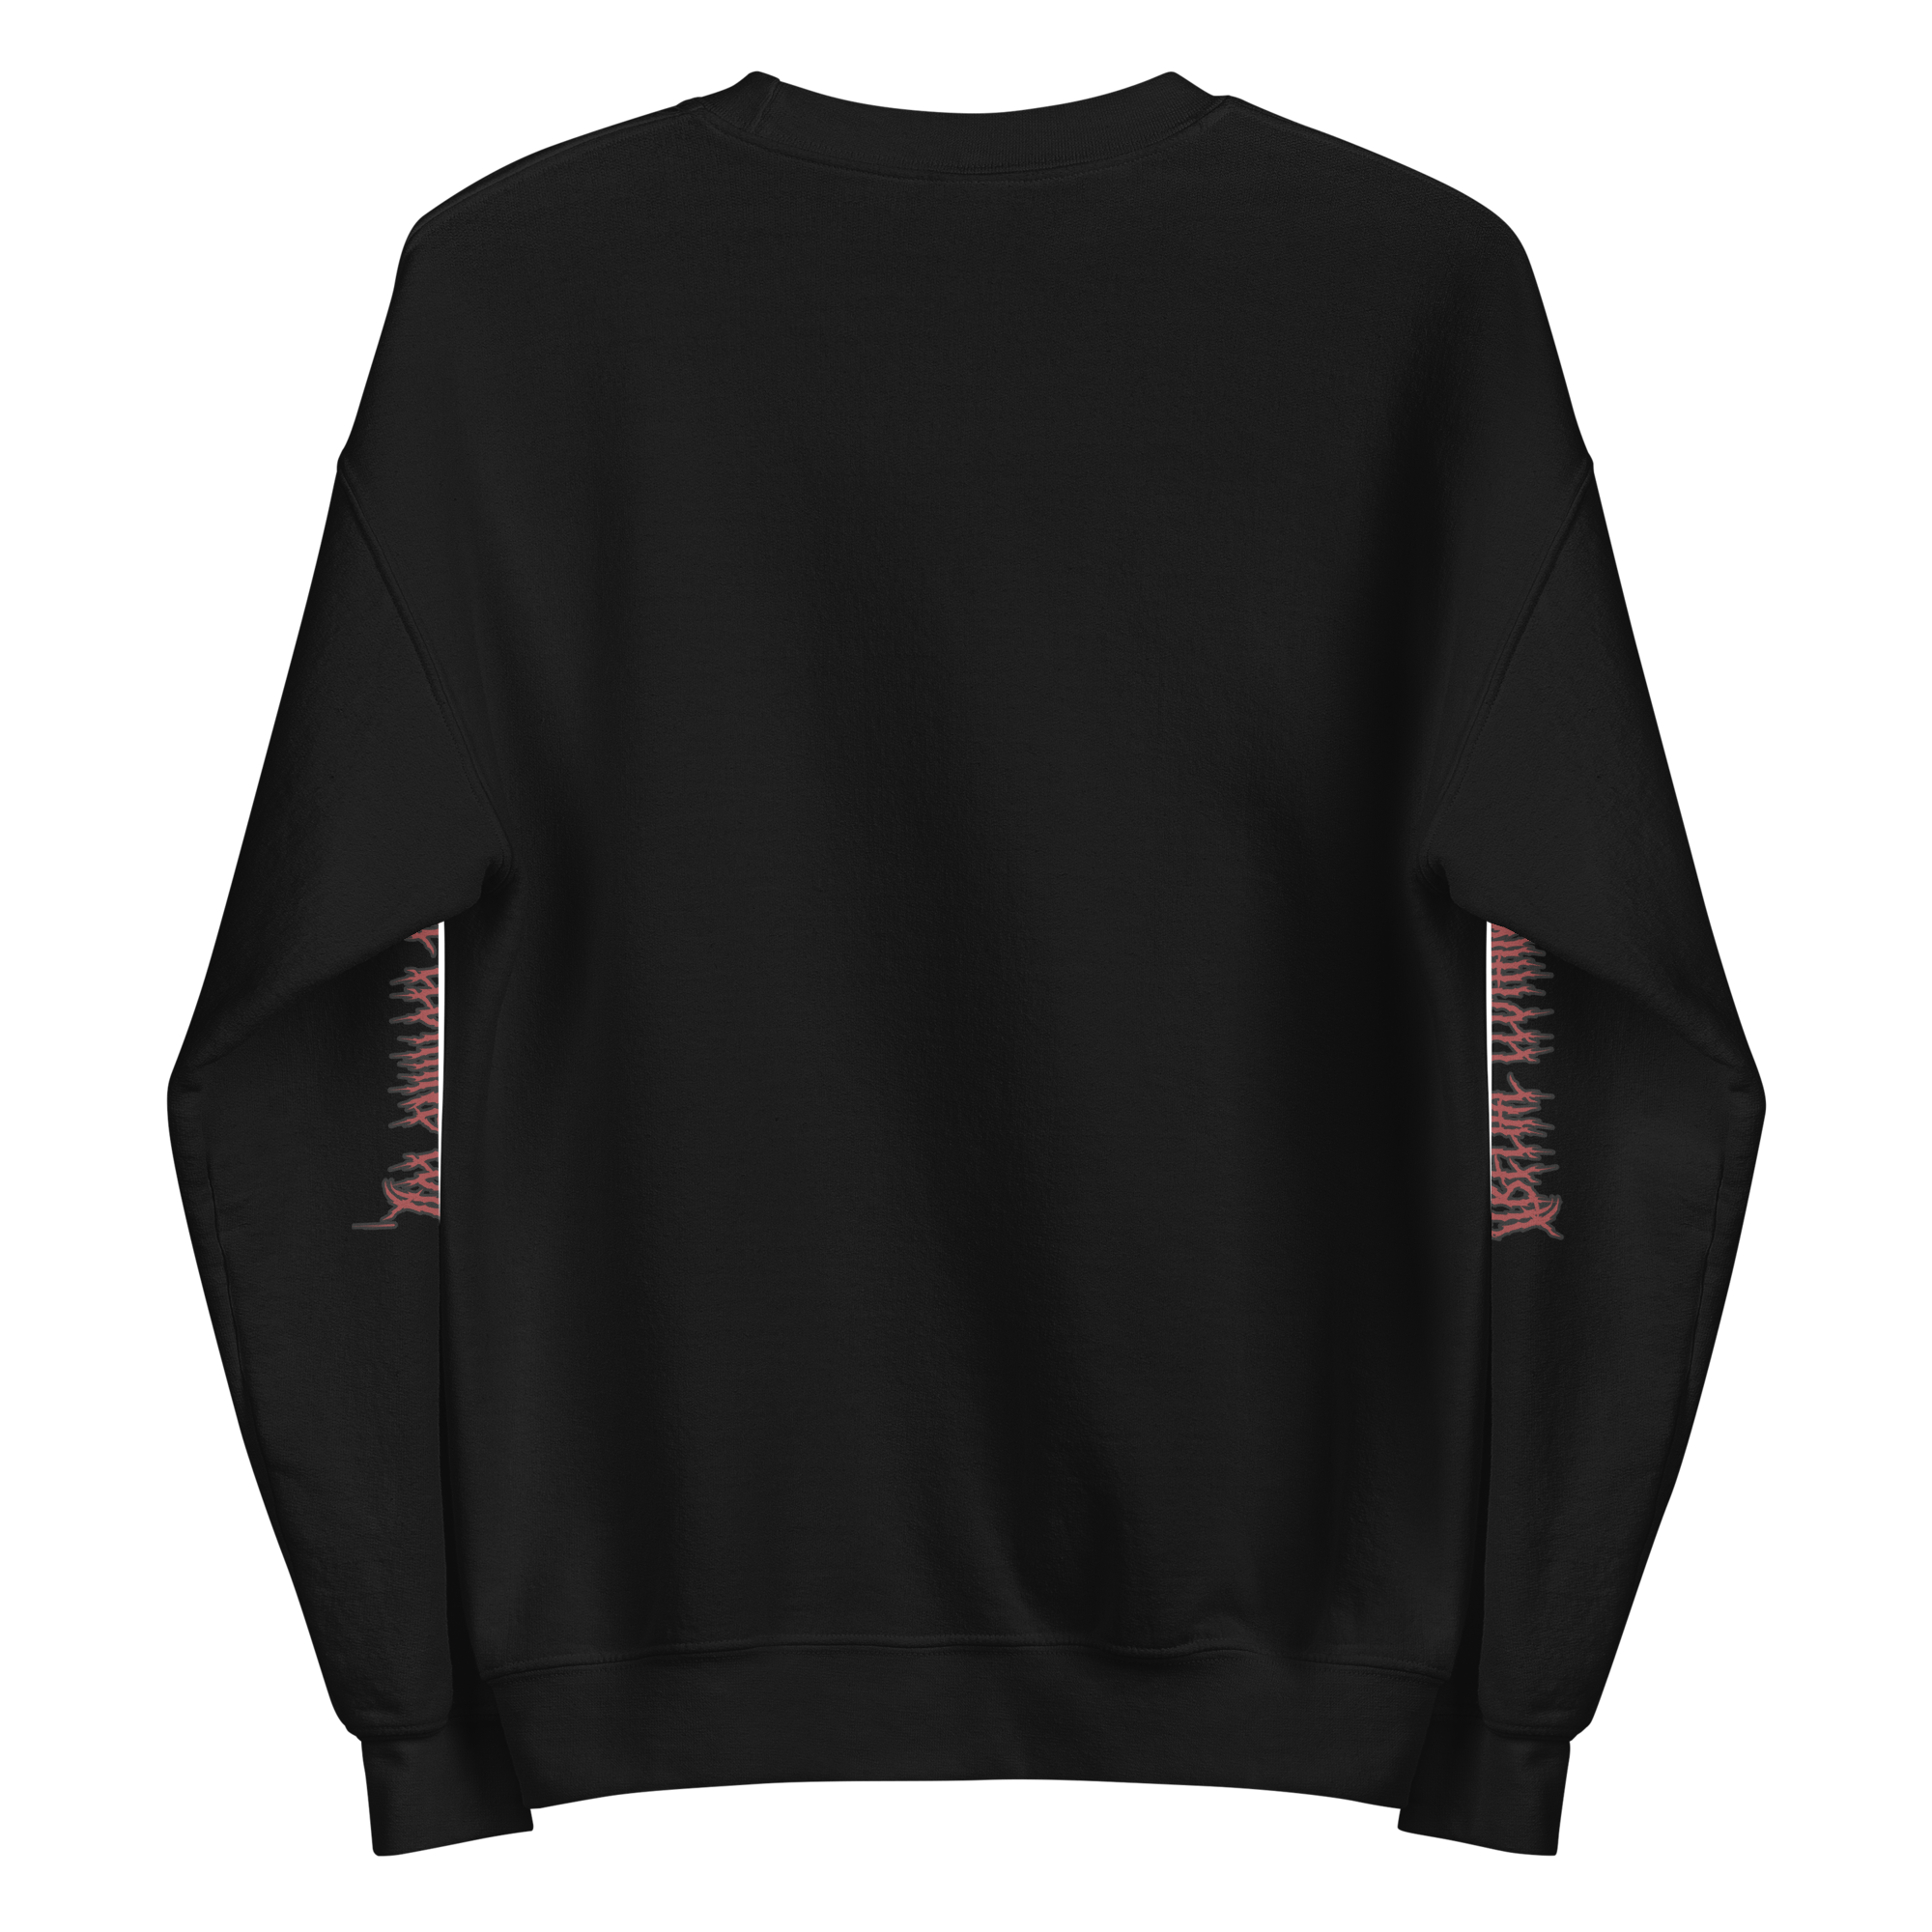 The Slayer Unisex Sweatshirt